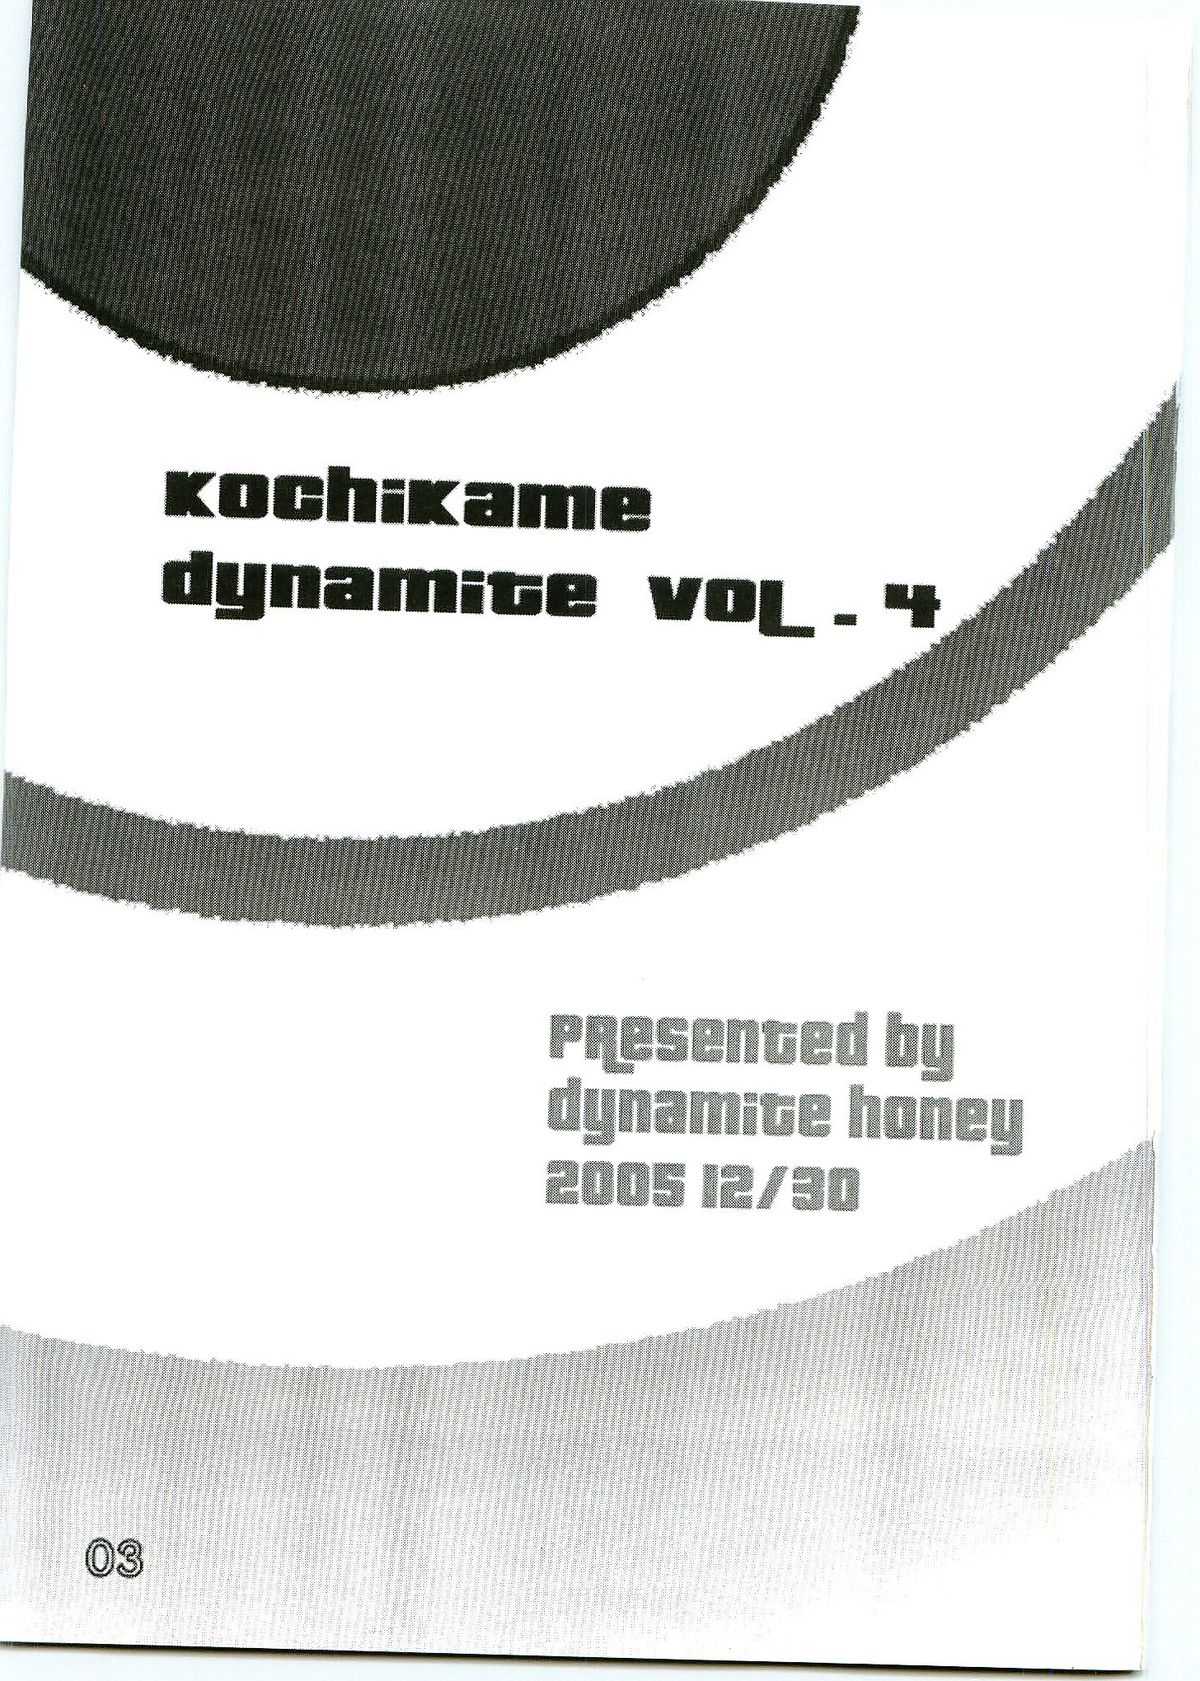 [Dynamite Honey] Kochikame Dynamite 4 (Kochikame) 